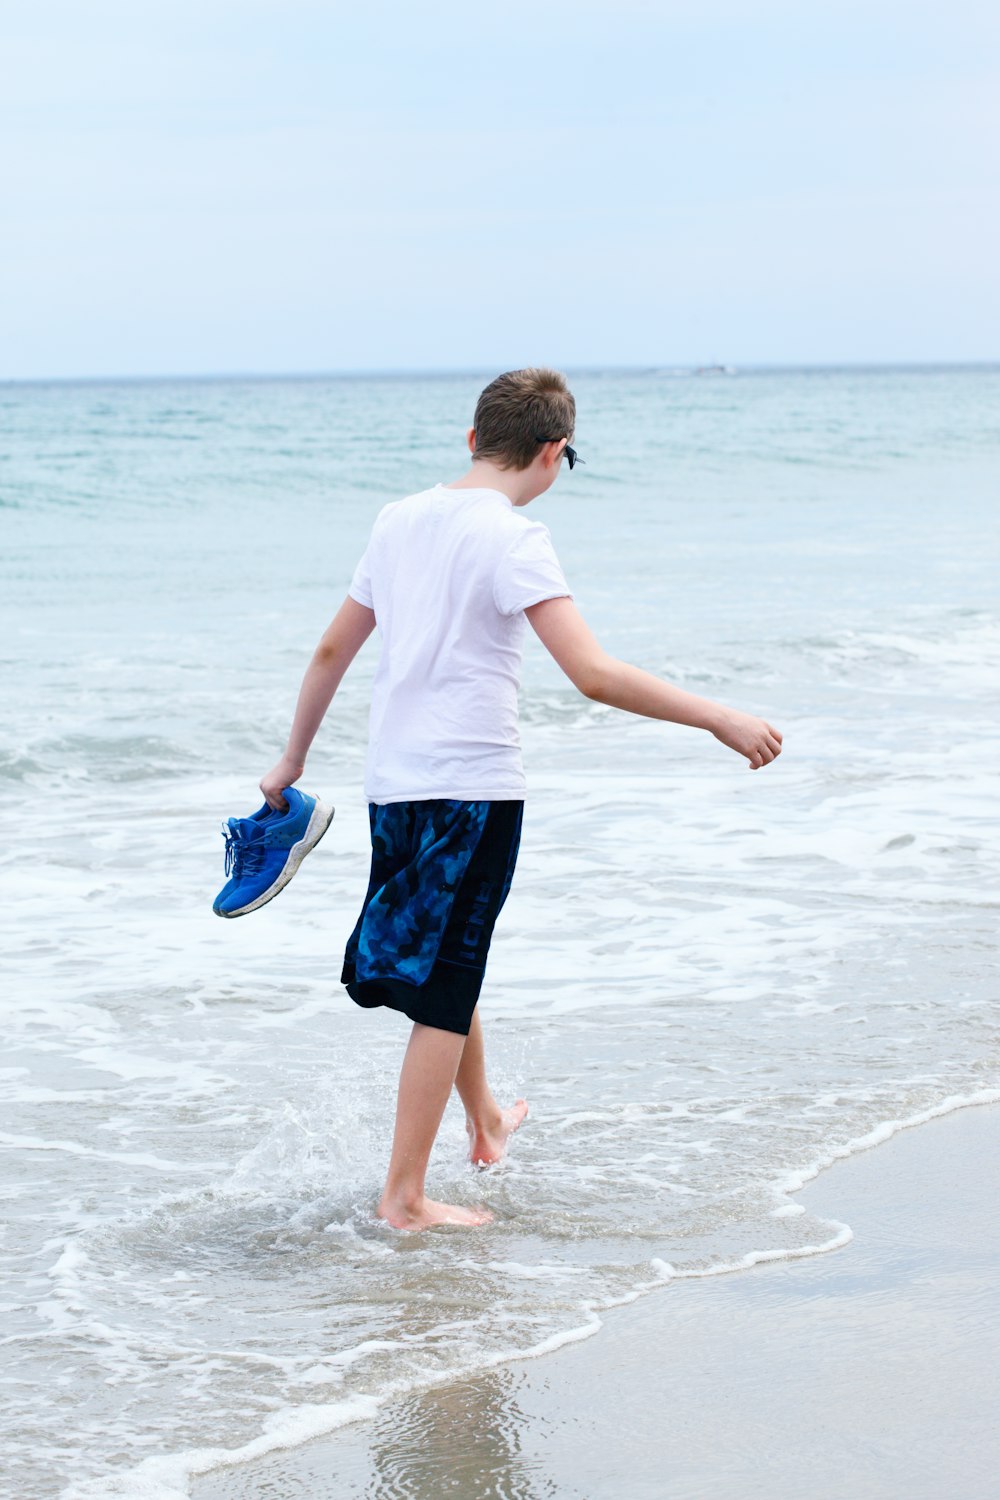 Junge in weißem T-Shirt und blauen Shorts läuft tagsüber am Strand